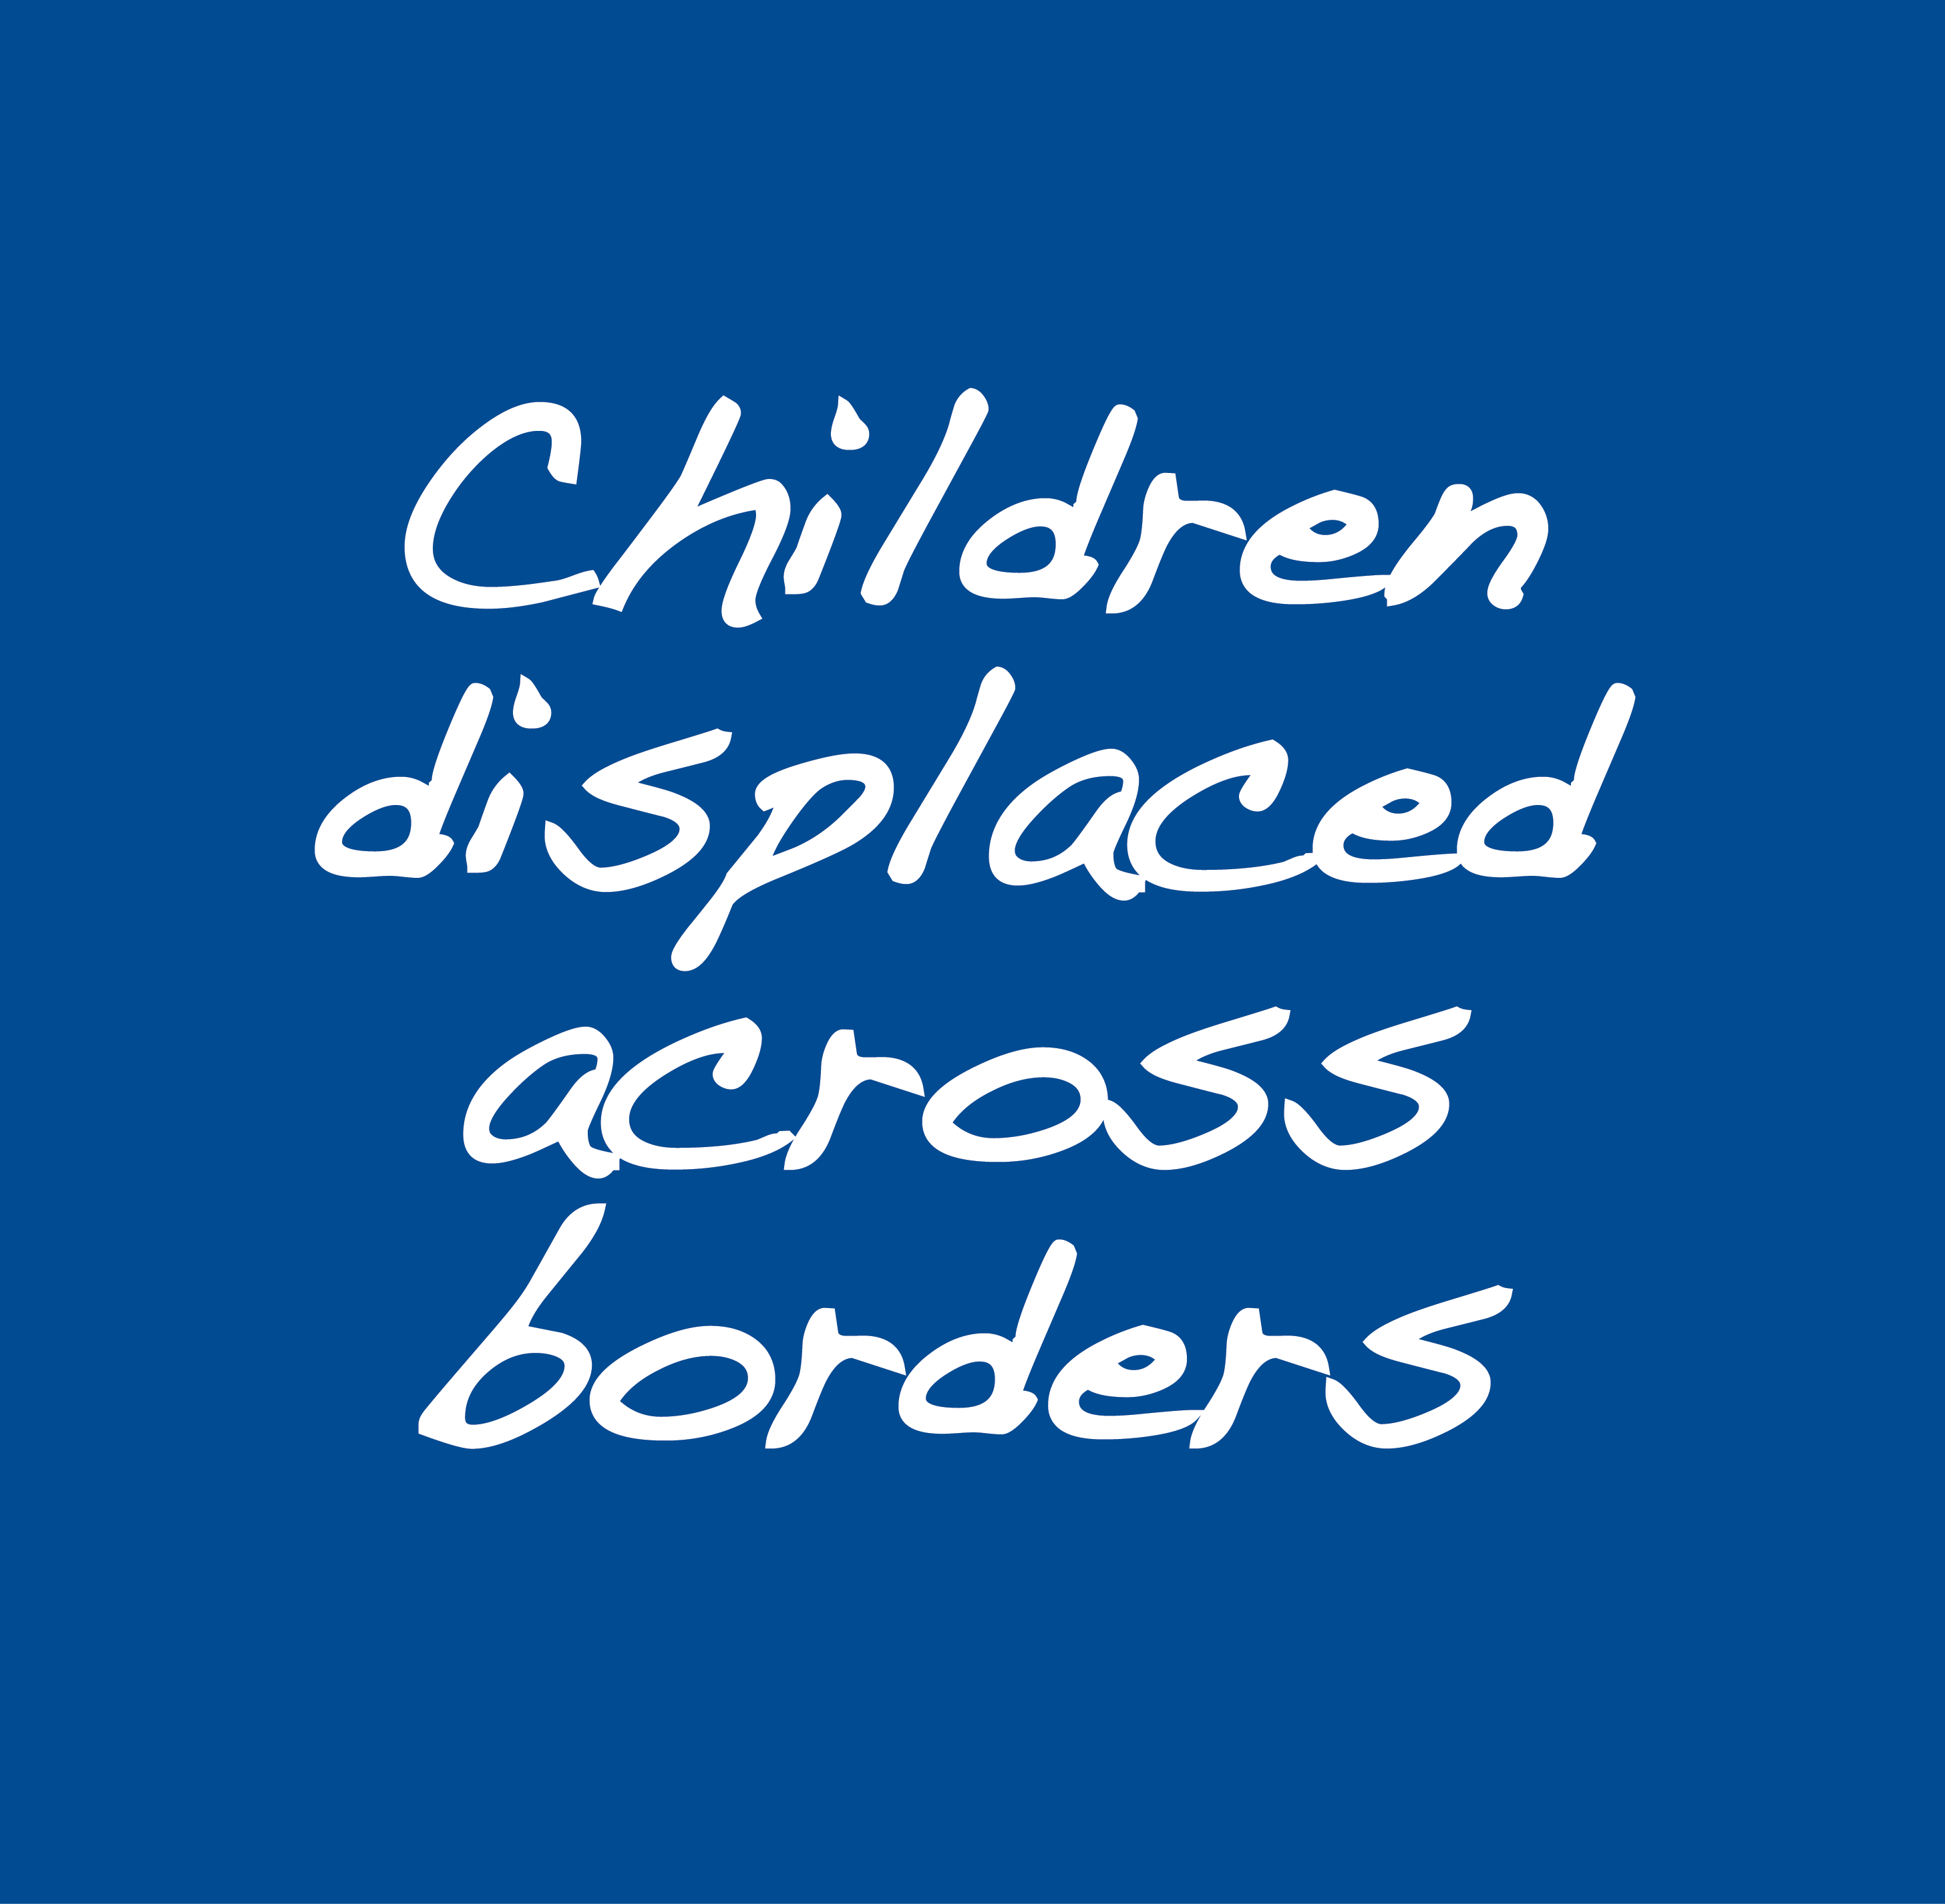 Children displaced across borders